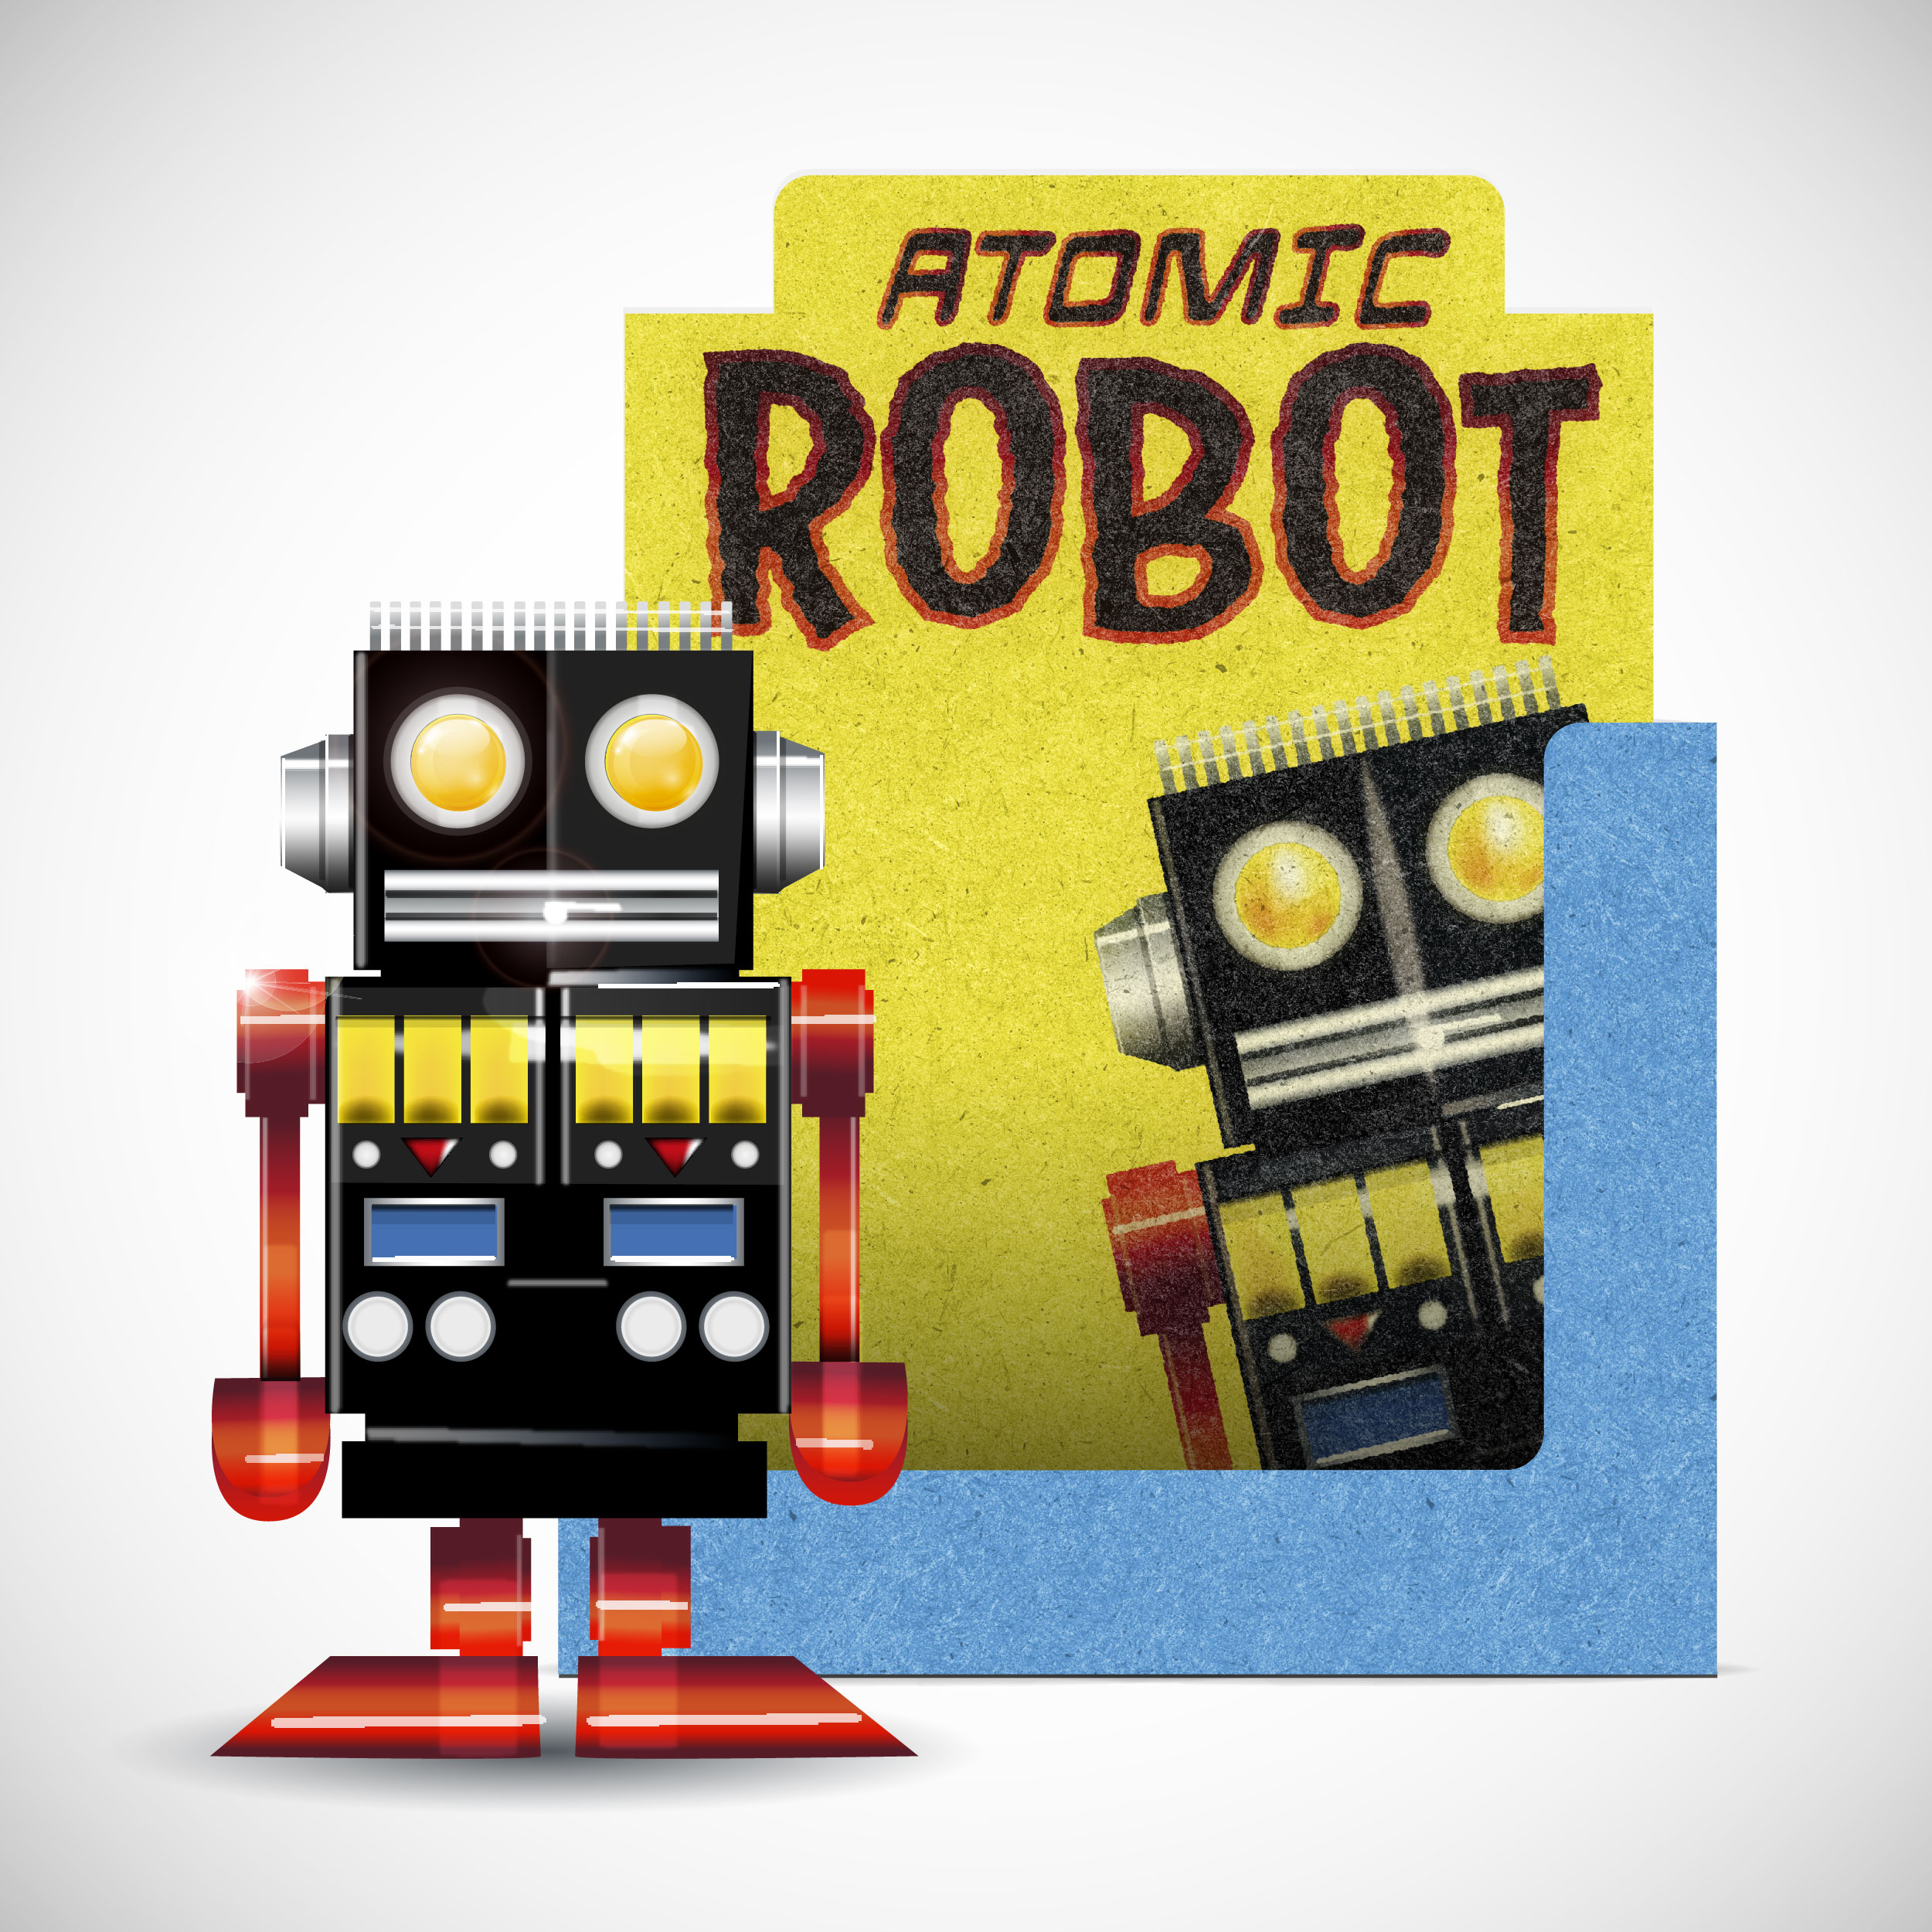 ATOMIC ROBOT PK-01